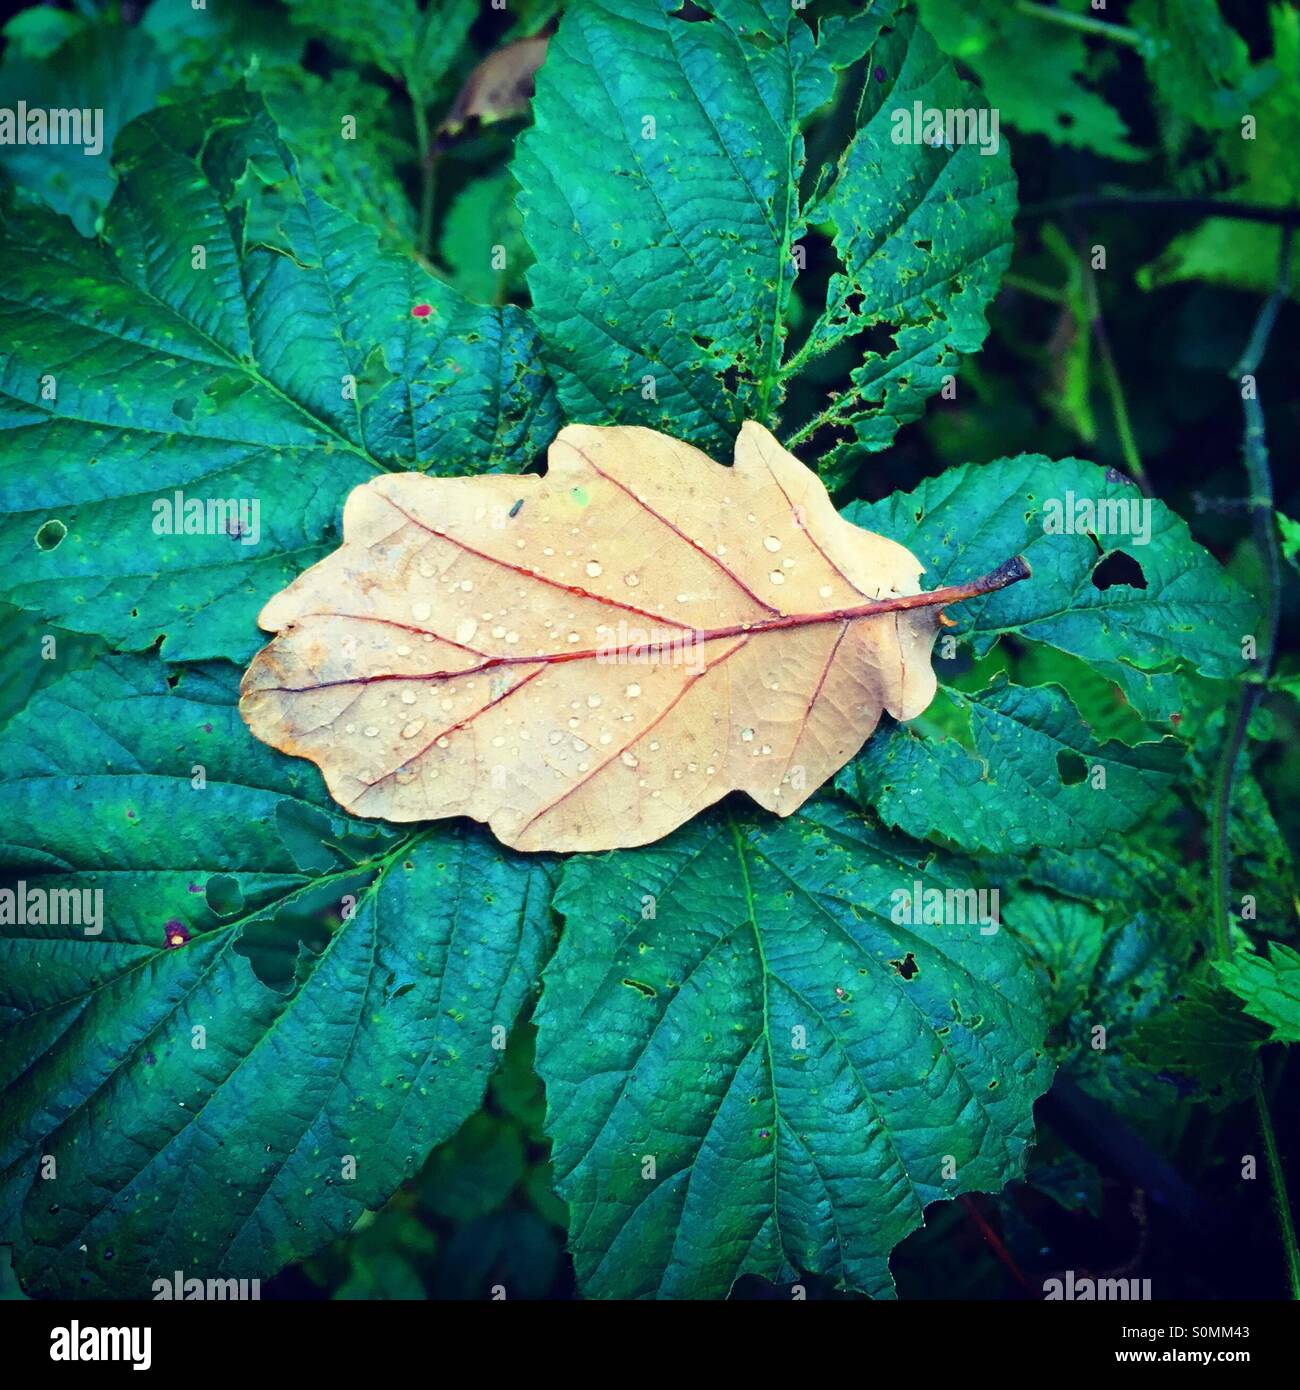 Oak tree leaf fallen on bramble leaves, autumn in Wicklow, Ireland Stock Photo